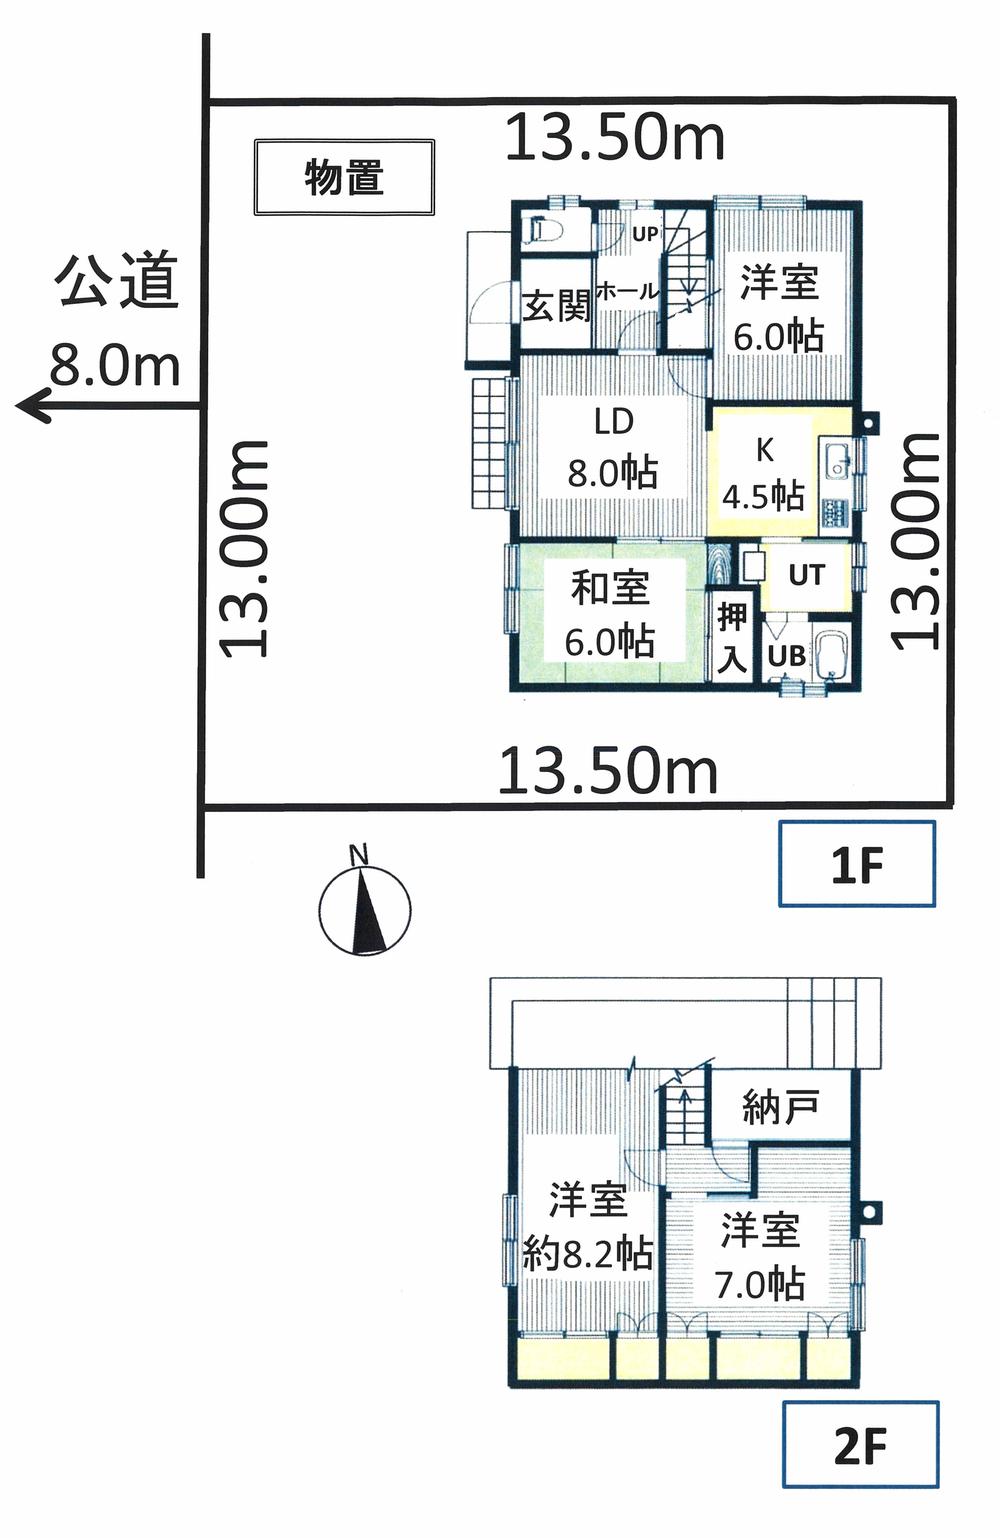 Floor plan. 9,980,000 yen, 4LDK + S (storeroom), Land area 175.5 sq m , Building area 93.55 sq m floor plan